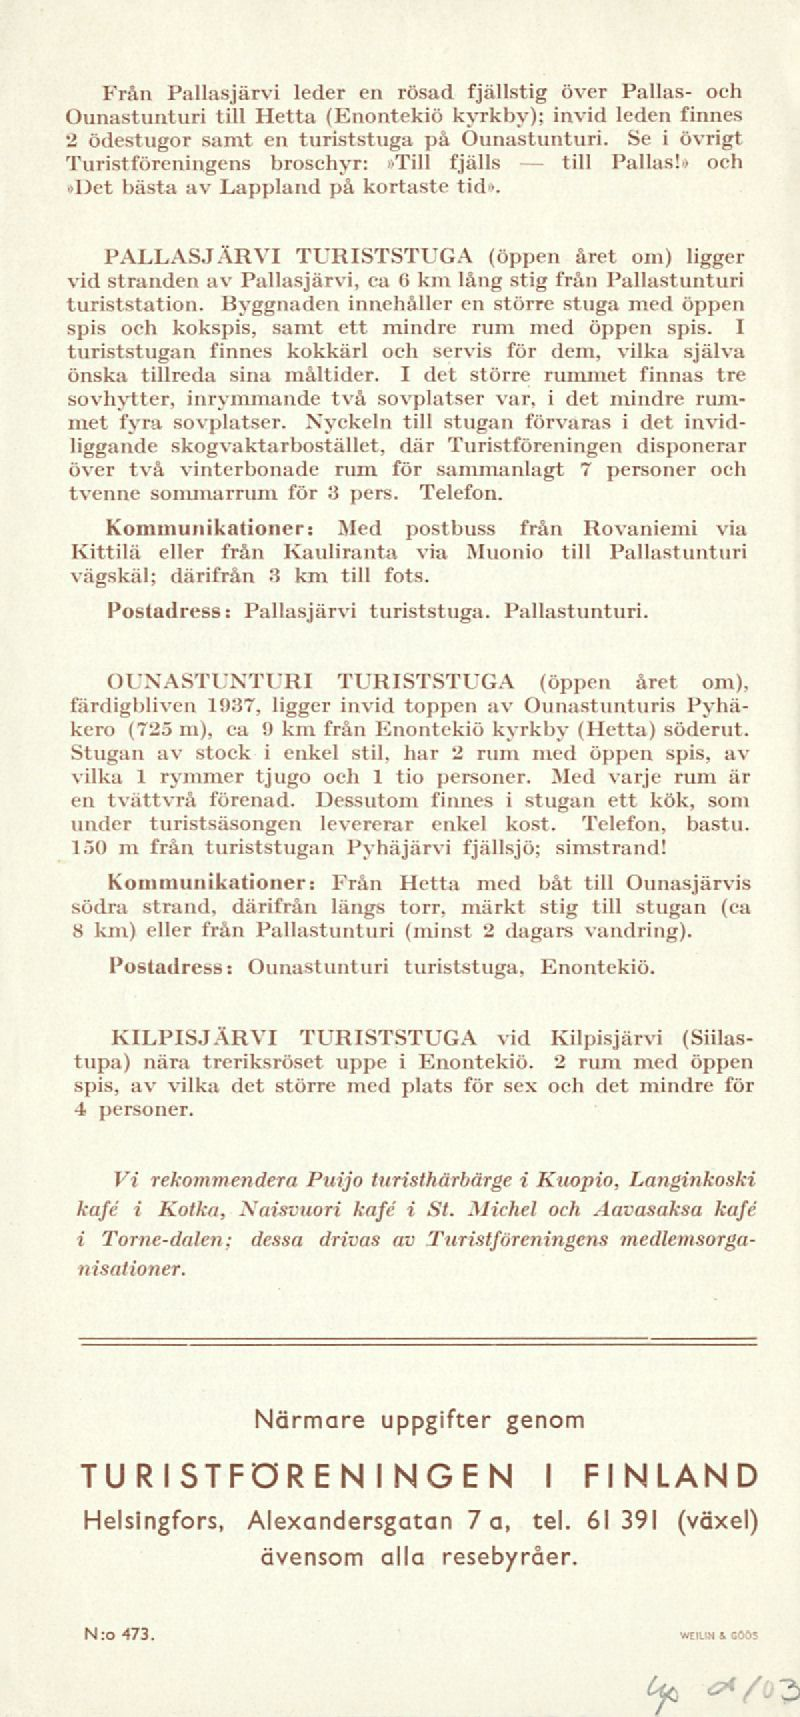 till Från Pallasjärvi leder en rösad fjällstig över Pallas- och Ounastunturi till Hetta (Enontekiö kyrkby); invid leden finnes 2 ödestugor samt en turiststuga på Ounastunturi.